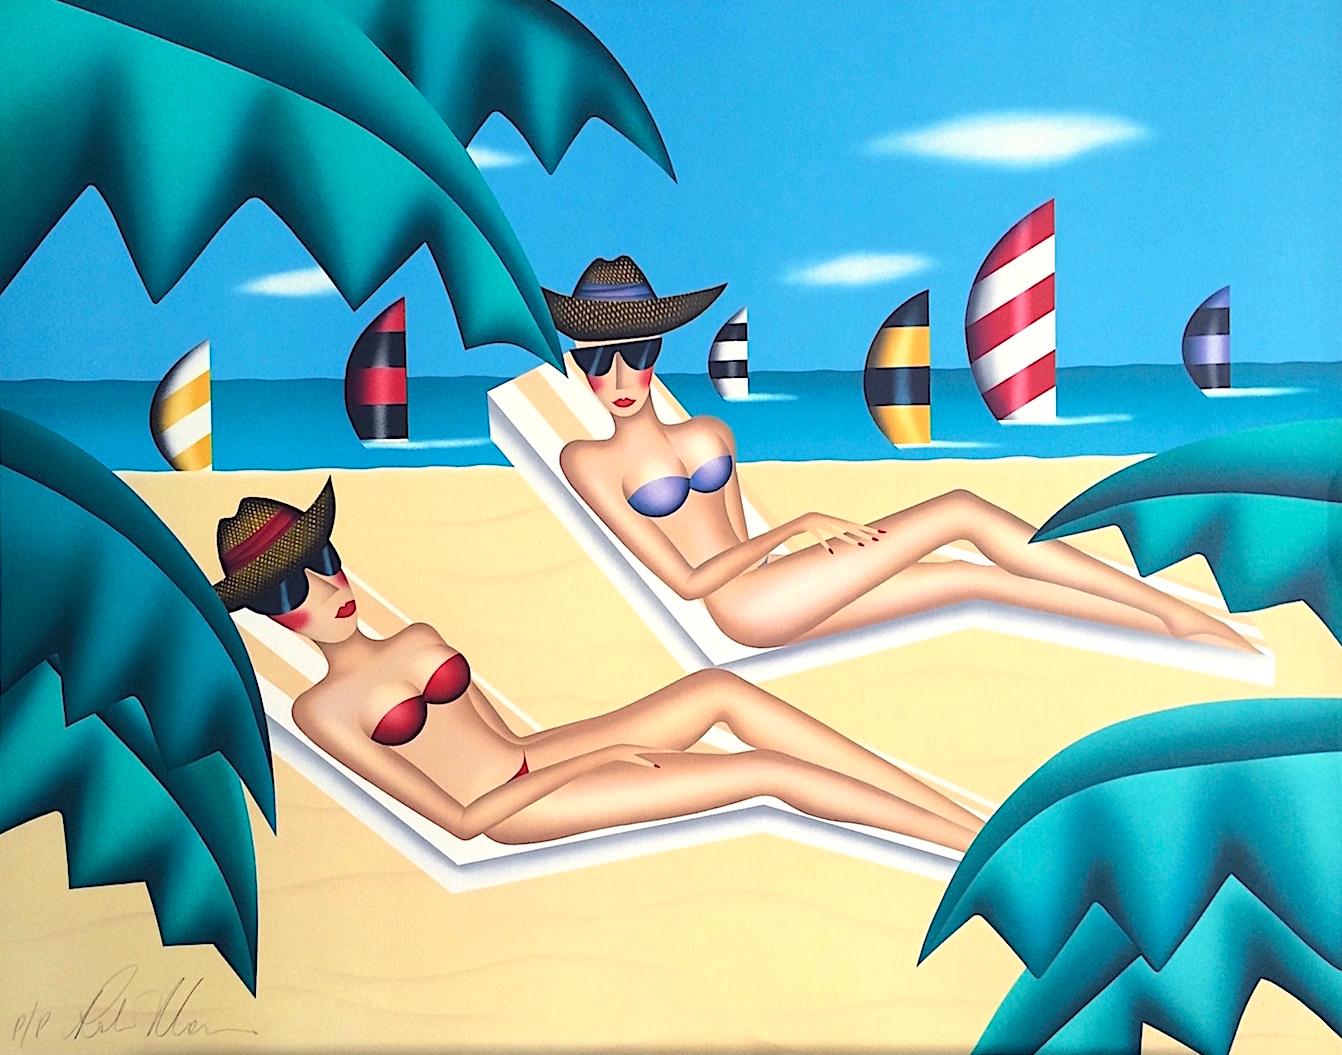 Robin Morris Landscape Print – SUNBATHERS Signierte Lithographie, Frauen im Bikinis, Sonnenbrille, Strand, Segelboote